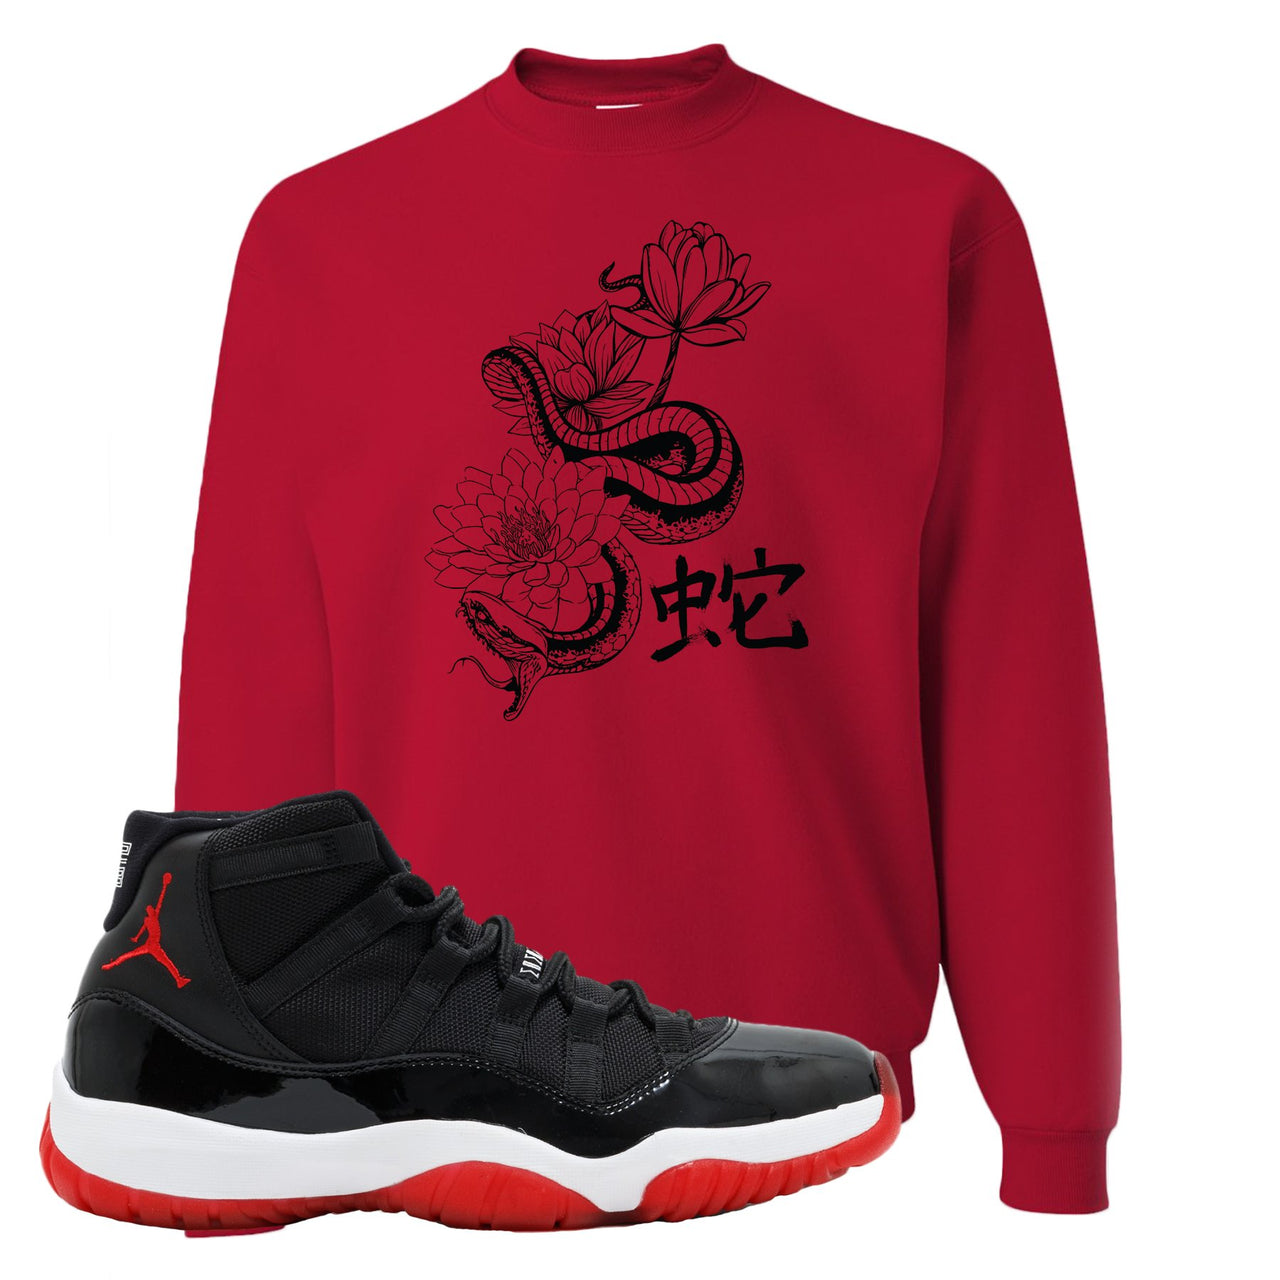 Jordan 11 Bred Snake Lotus Red Sneaker Hook Up Crewneck Sweatshirt